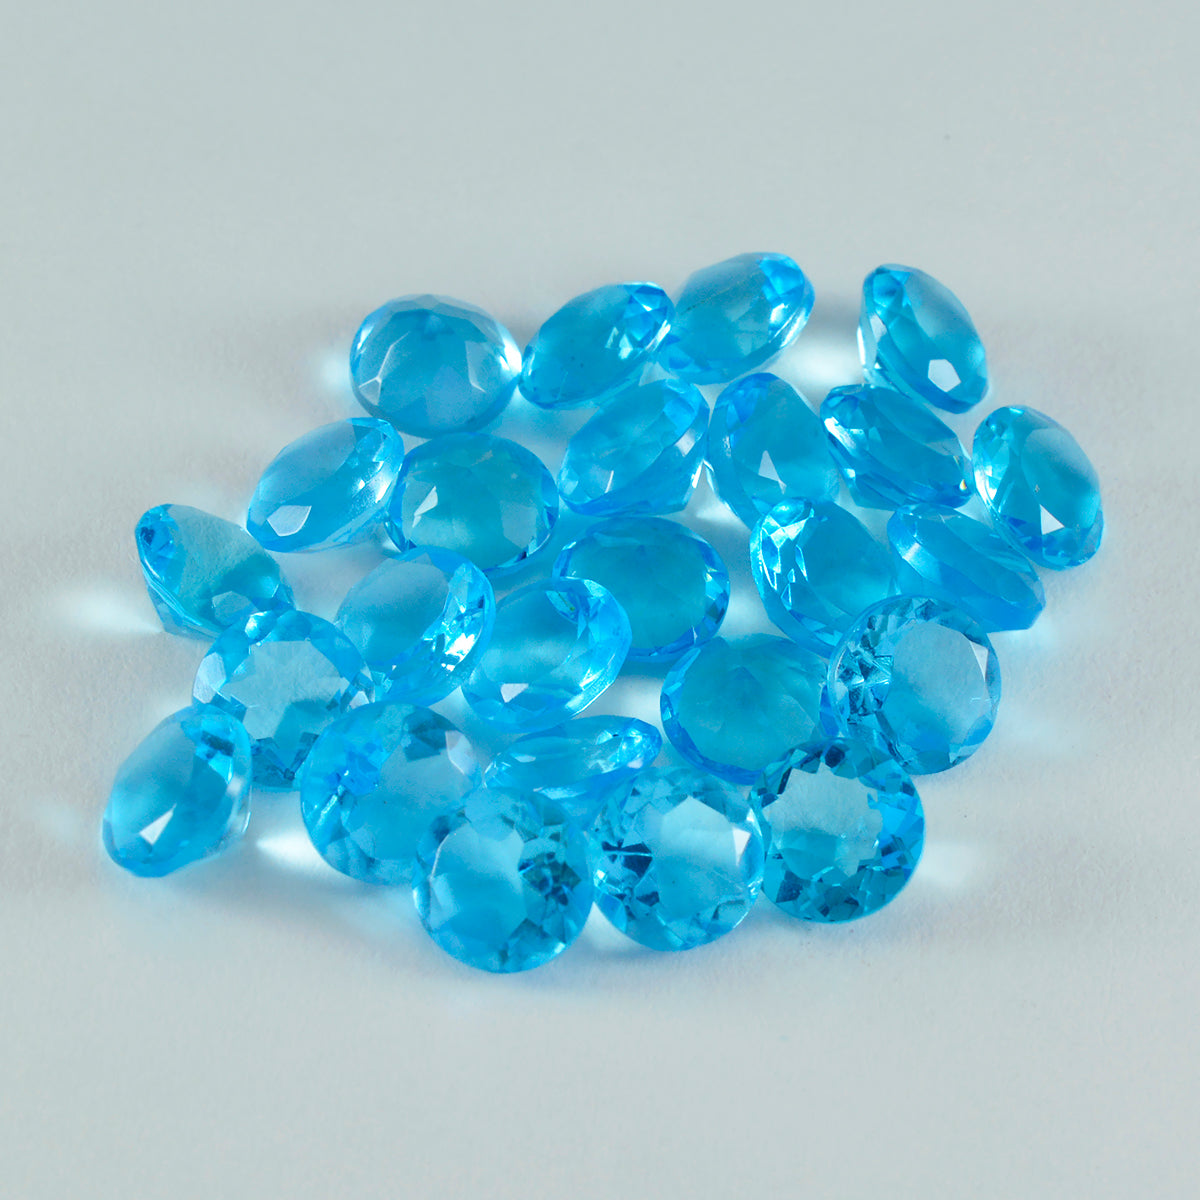 riyogems 1 шт. синий топаз cz ограненный 6x6 мм круглая форма красивые качественные свободные драгоценные камни